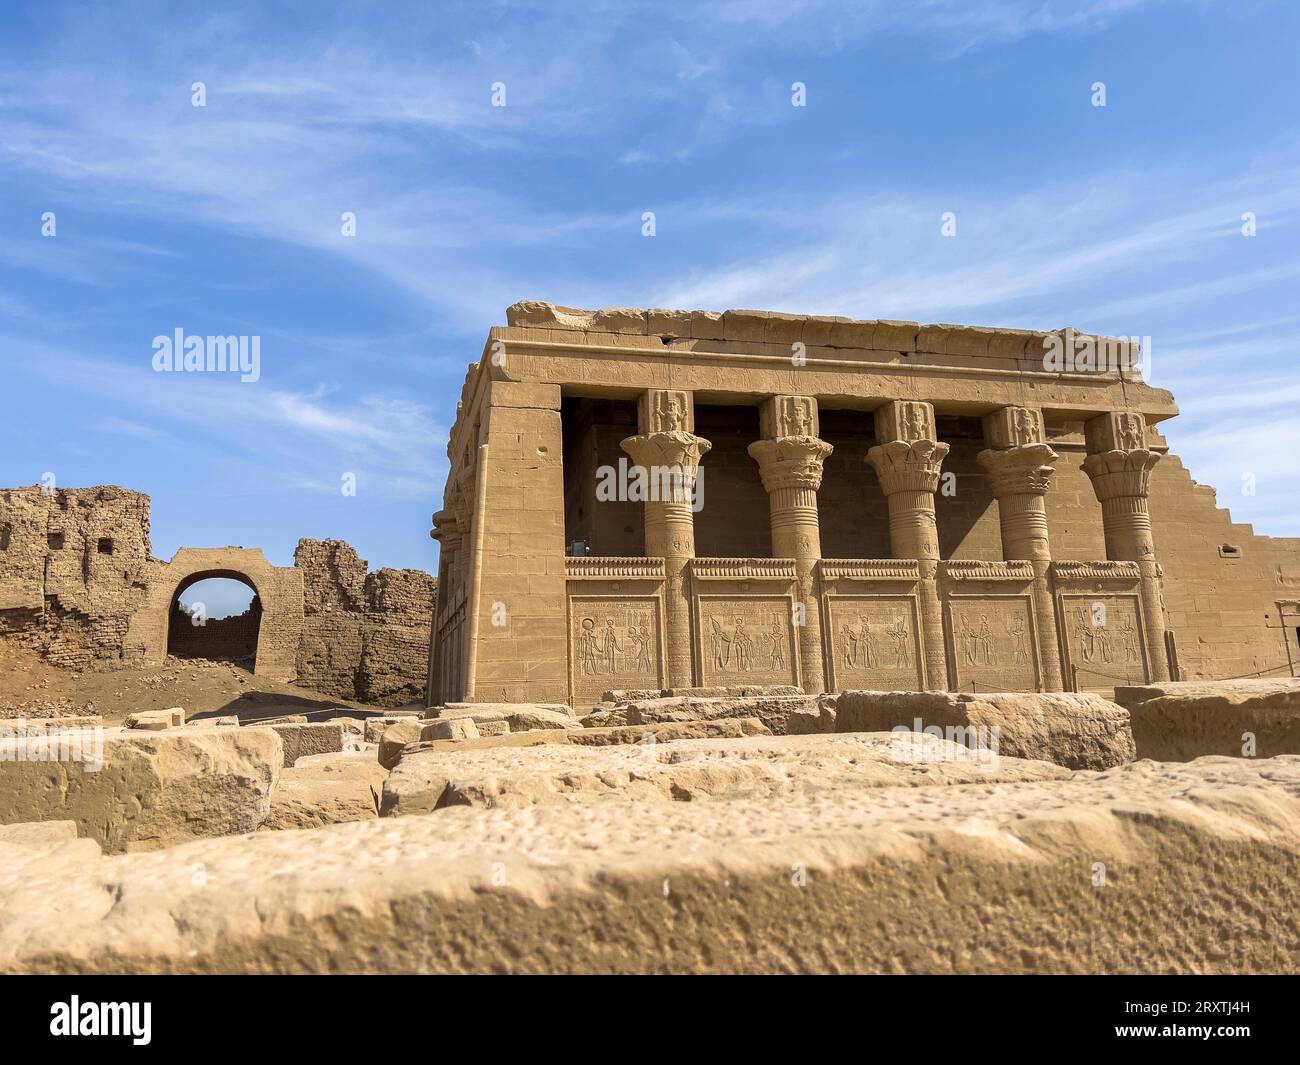 Le mammisi romain, datant des règnes de Trajan et Marc Aurèle, complexe du temple de Dendera, Dendera, Egypte, Afrique du Nord, Afrique Banque D'Images